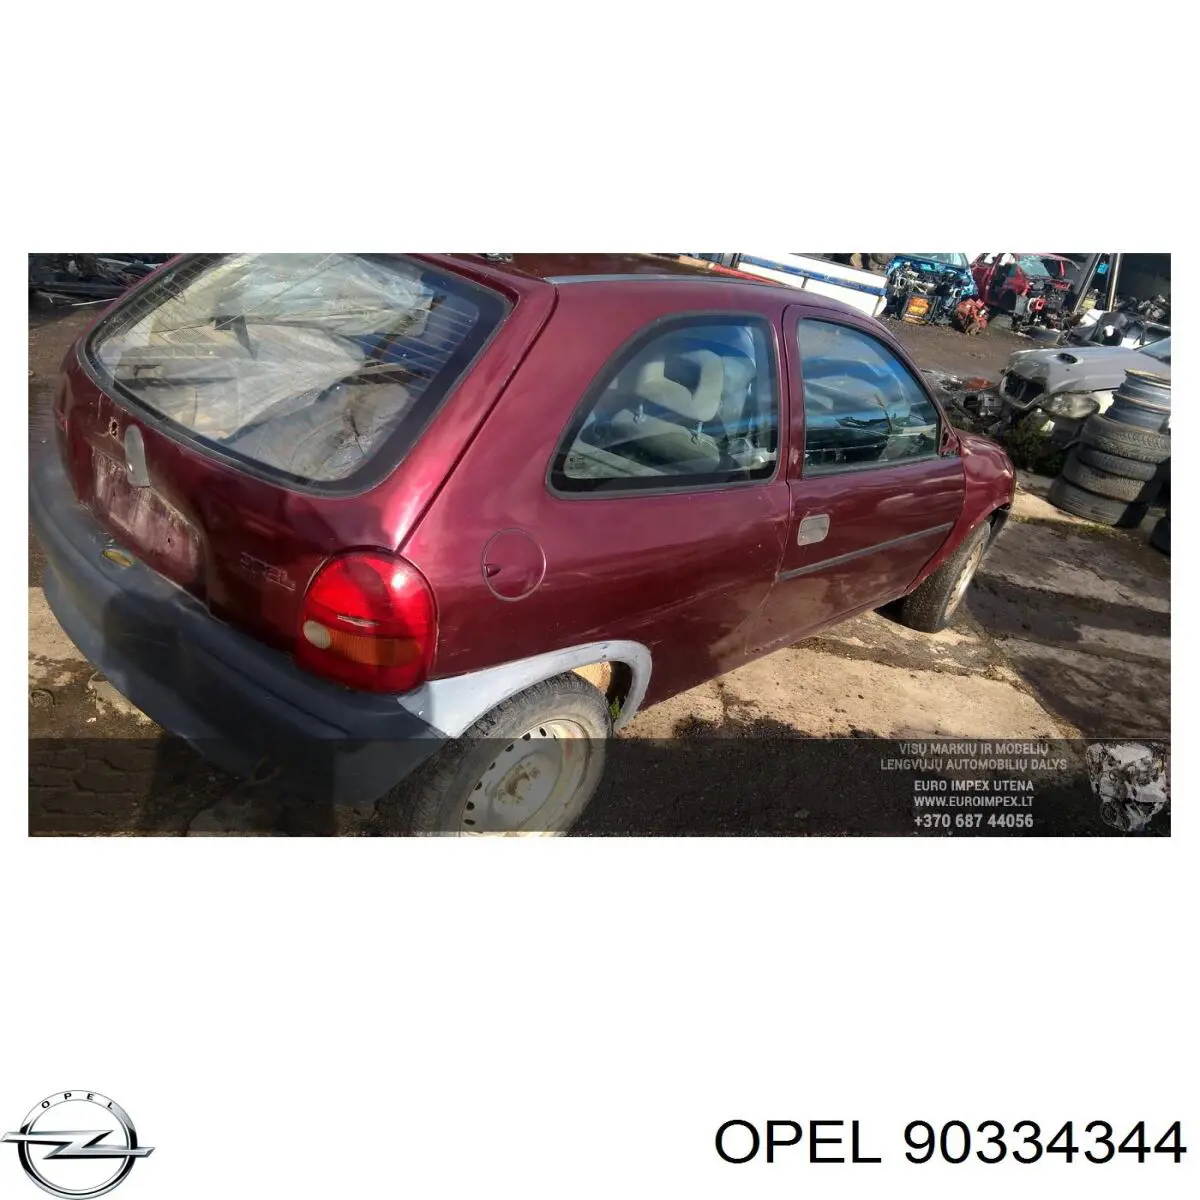 0702004 Opel caja de cambios mecánica, completa